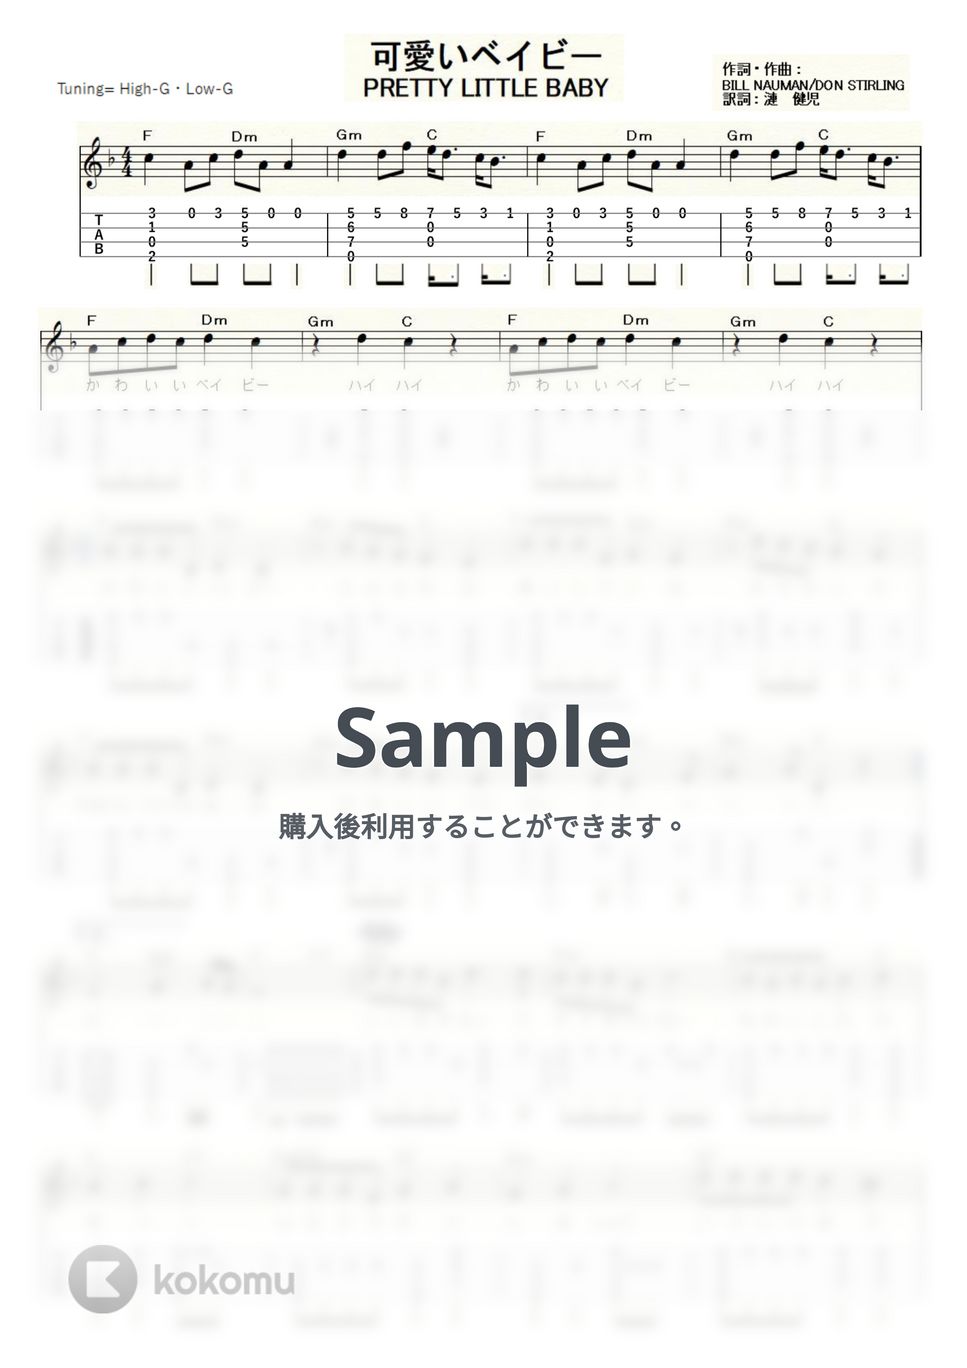 中尾ミエ - 可愛いベイビー (ｳｸﾚﾚｿﾛ/High-G・Low-G/中級) by ukulelepapa